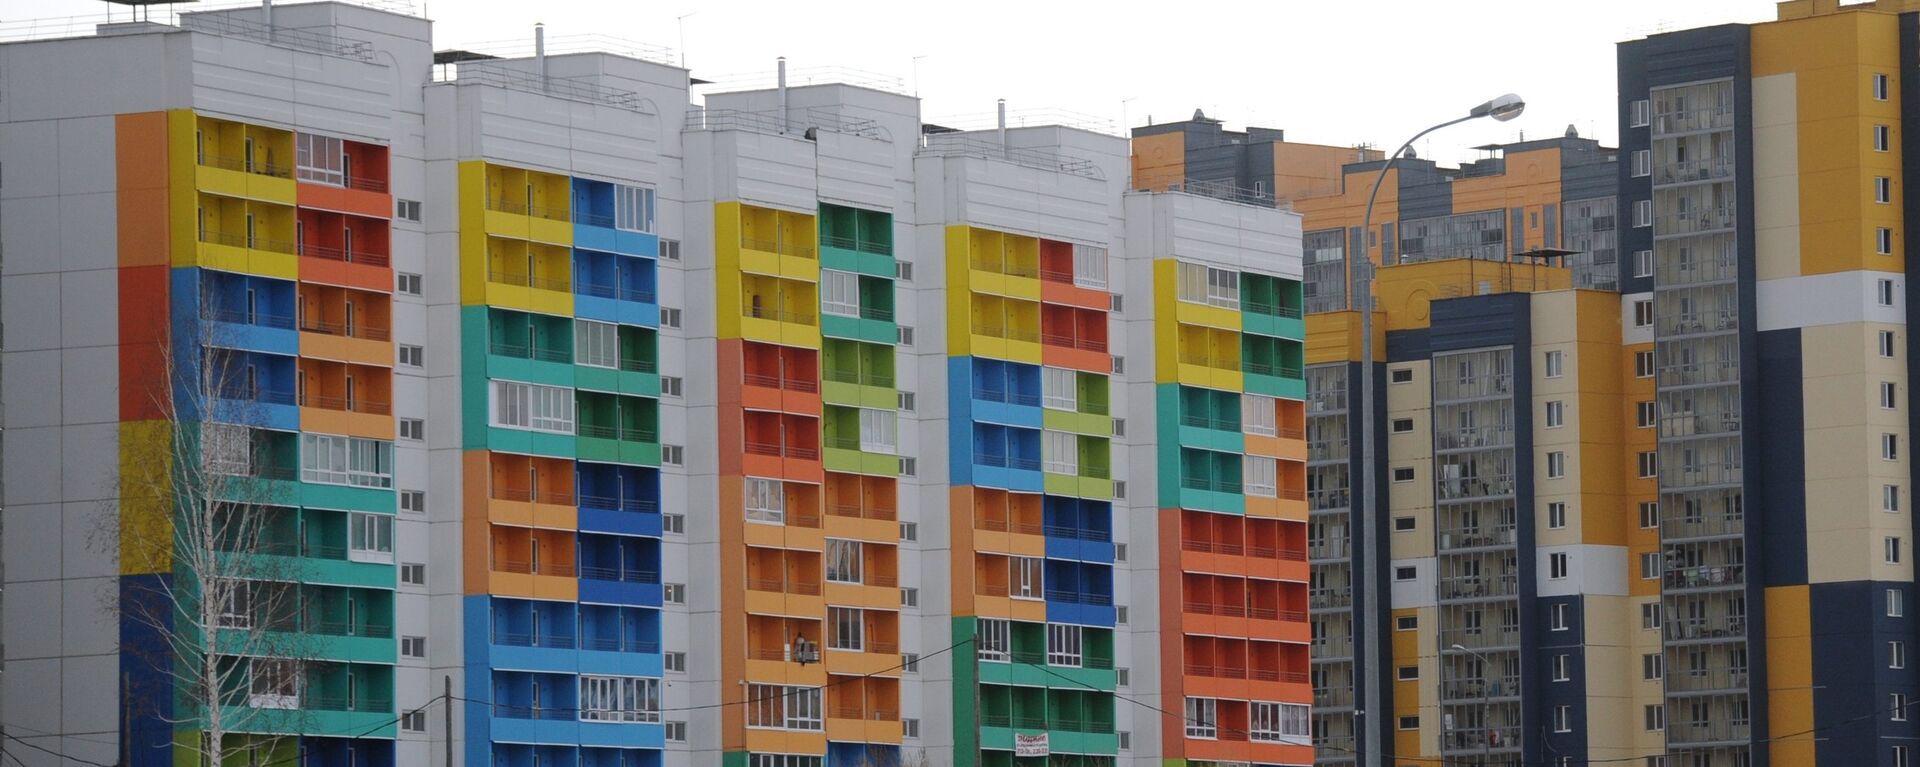 Многоэтажные дома с разноцветным фасадом - Sputnik Узбекистан, 1920, 04.03.2021